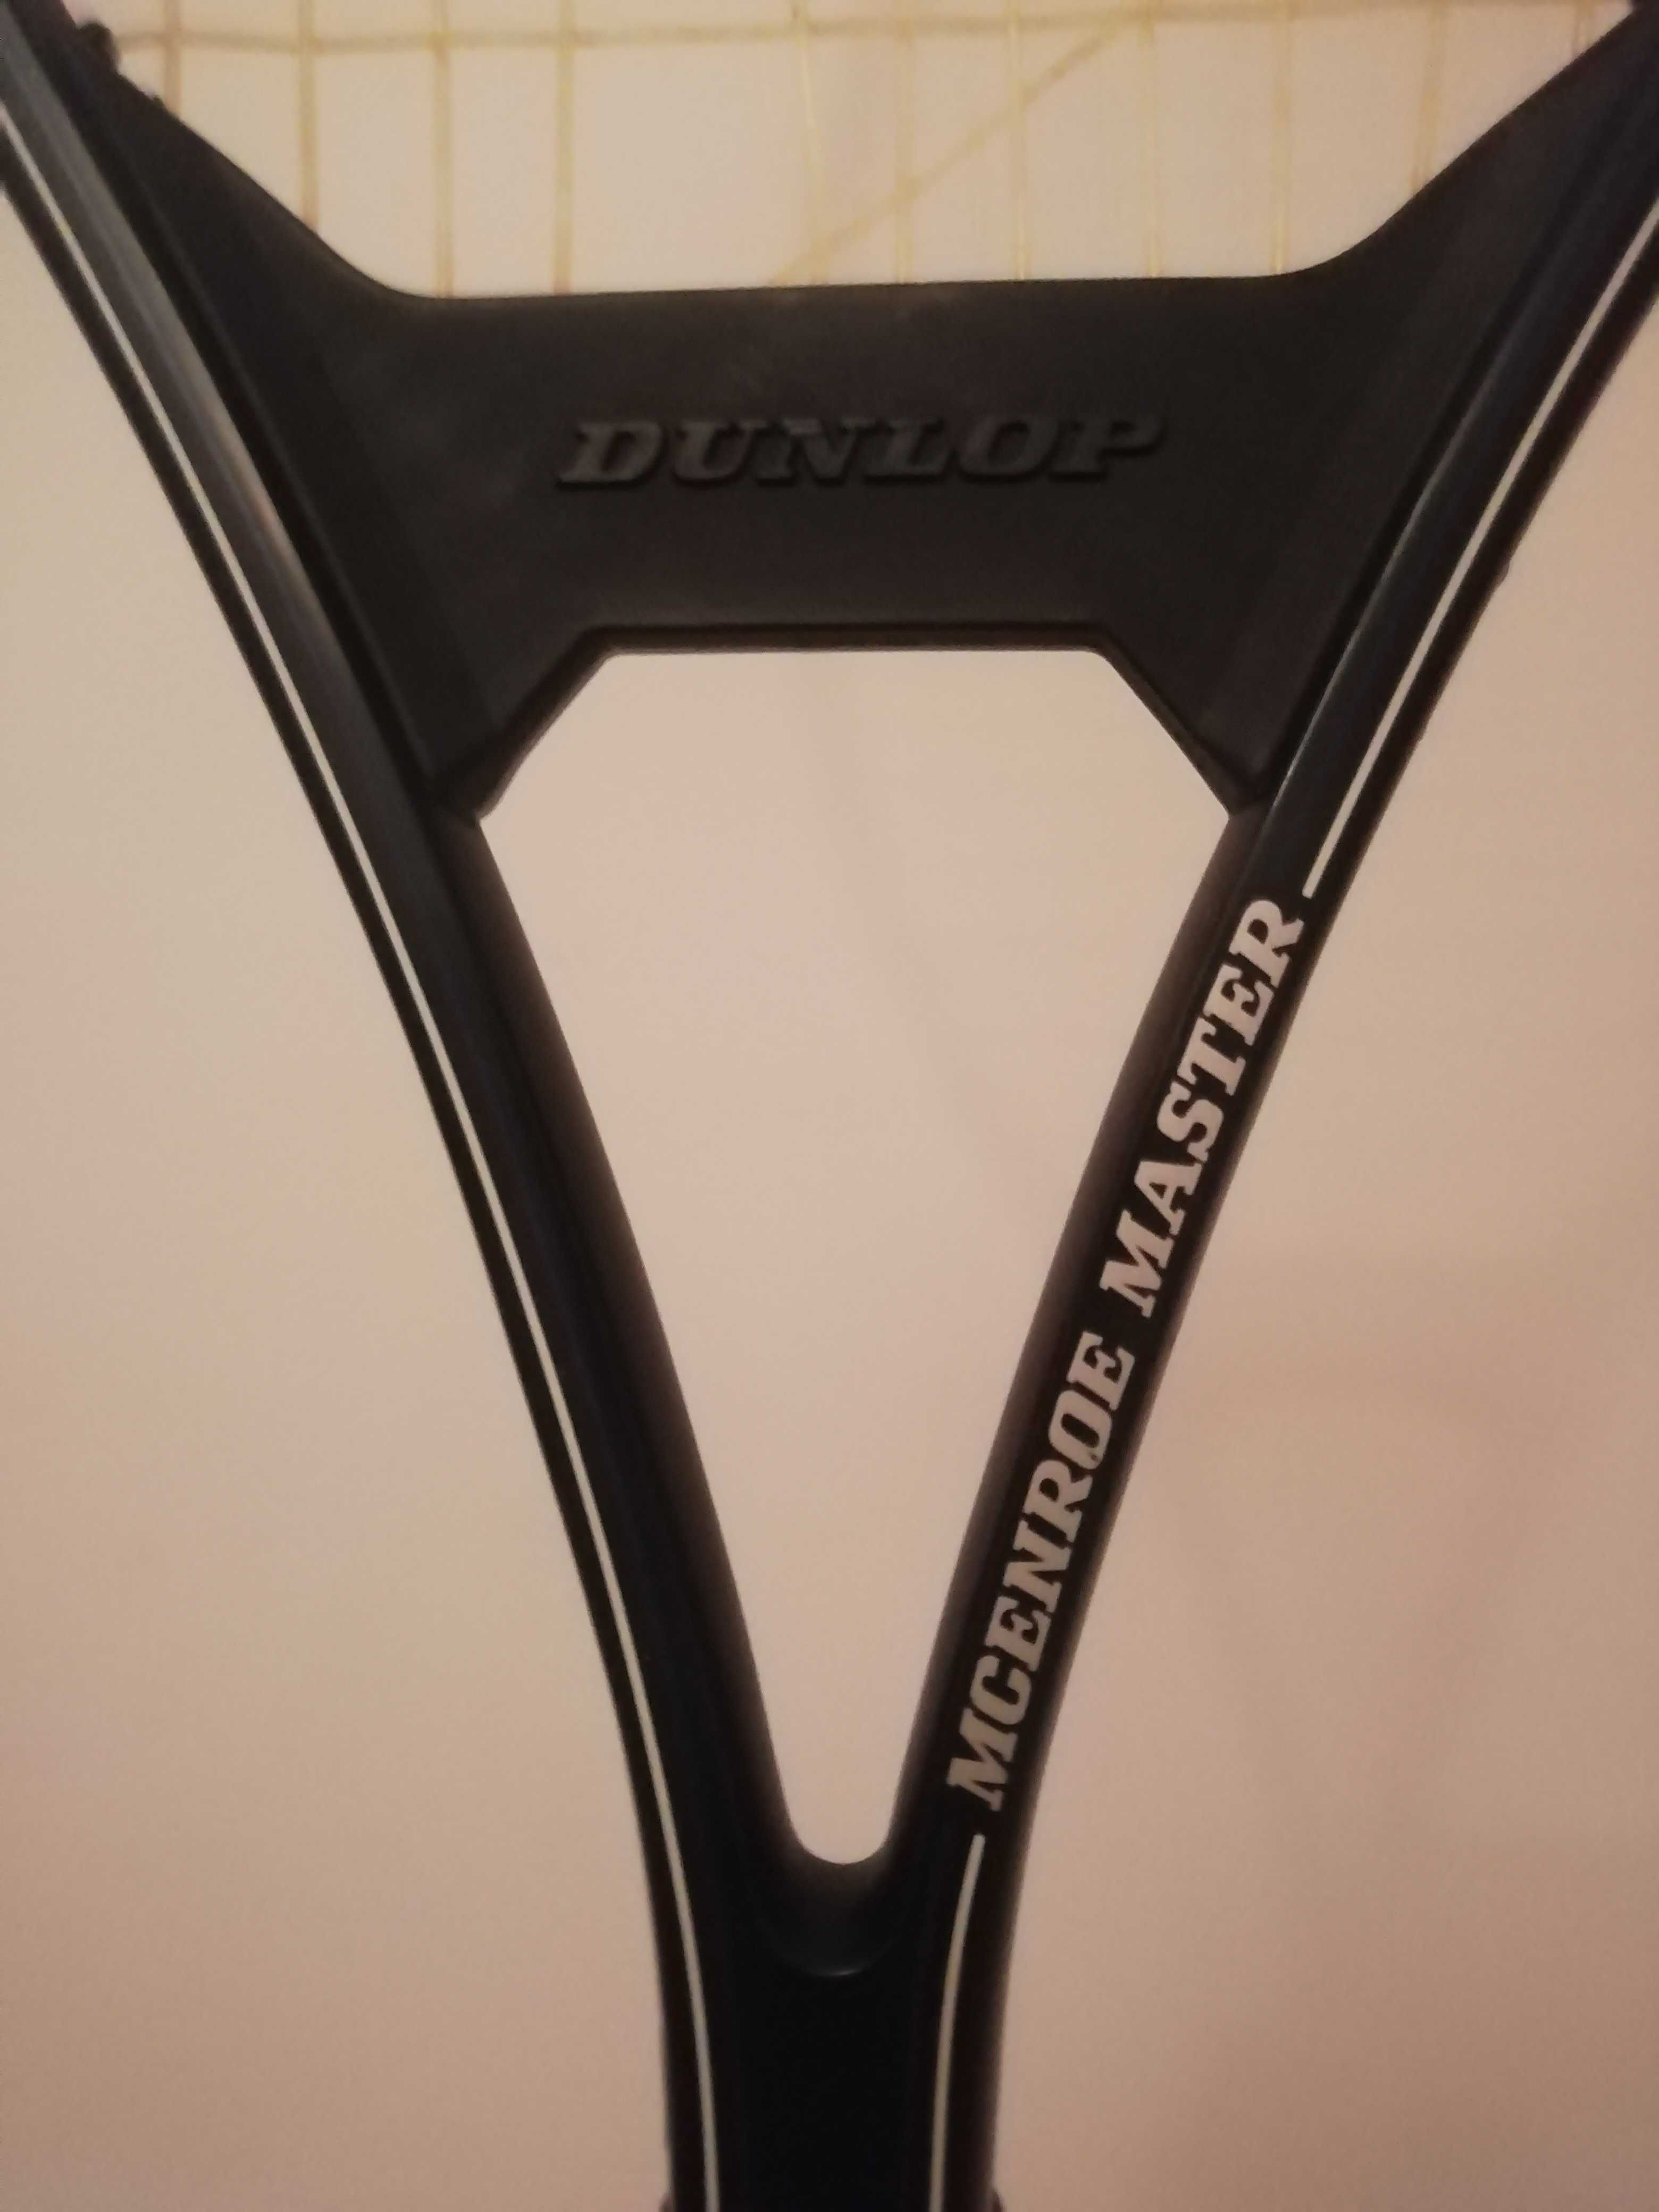 Raquete Ténis Dunlop Mcenroe